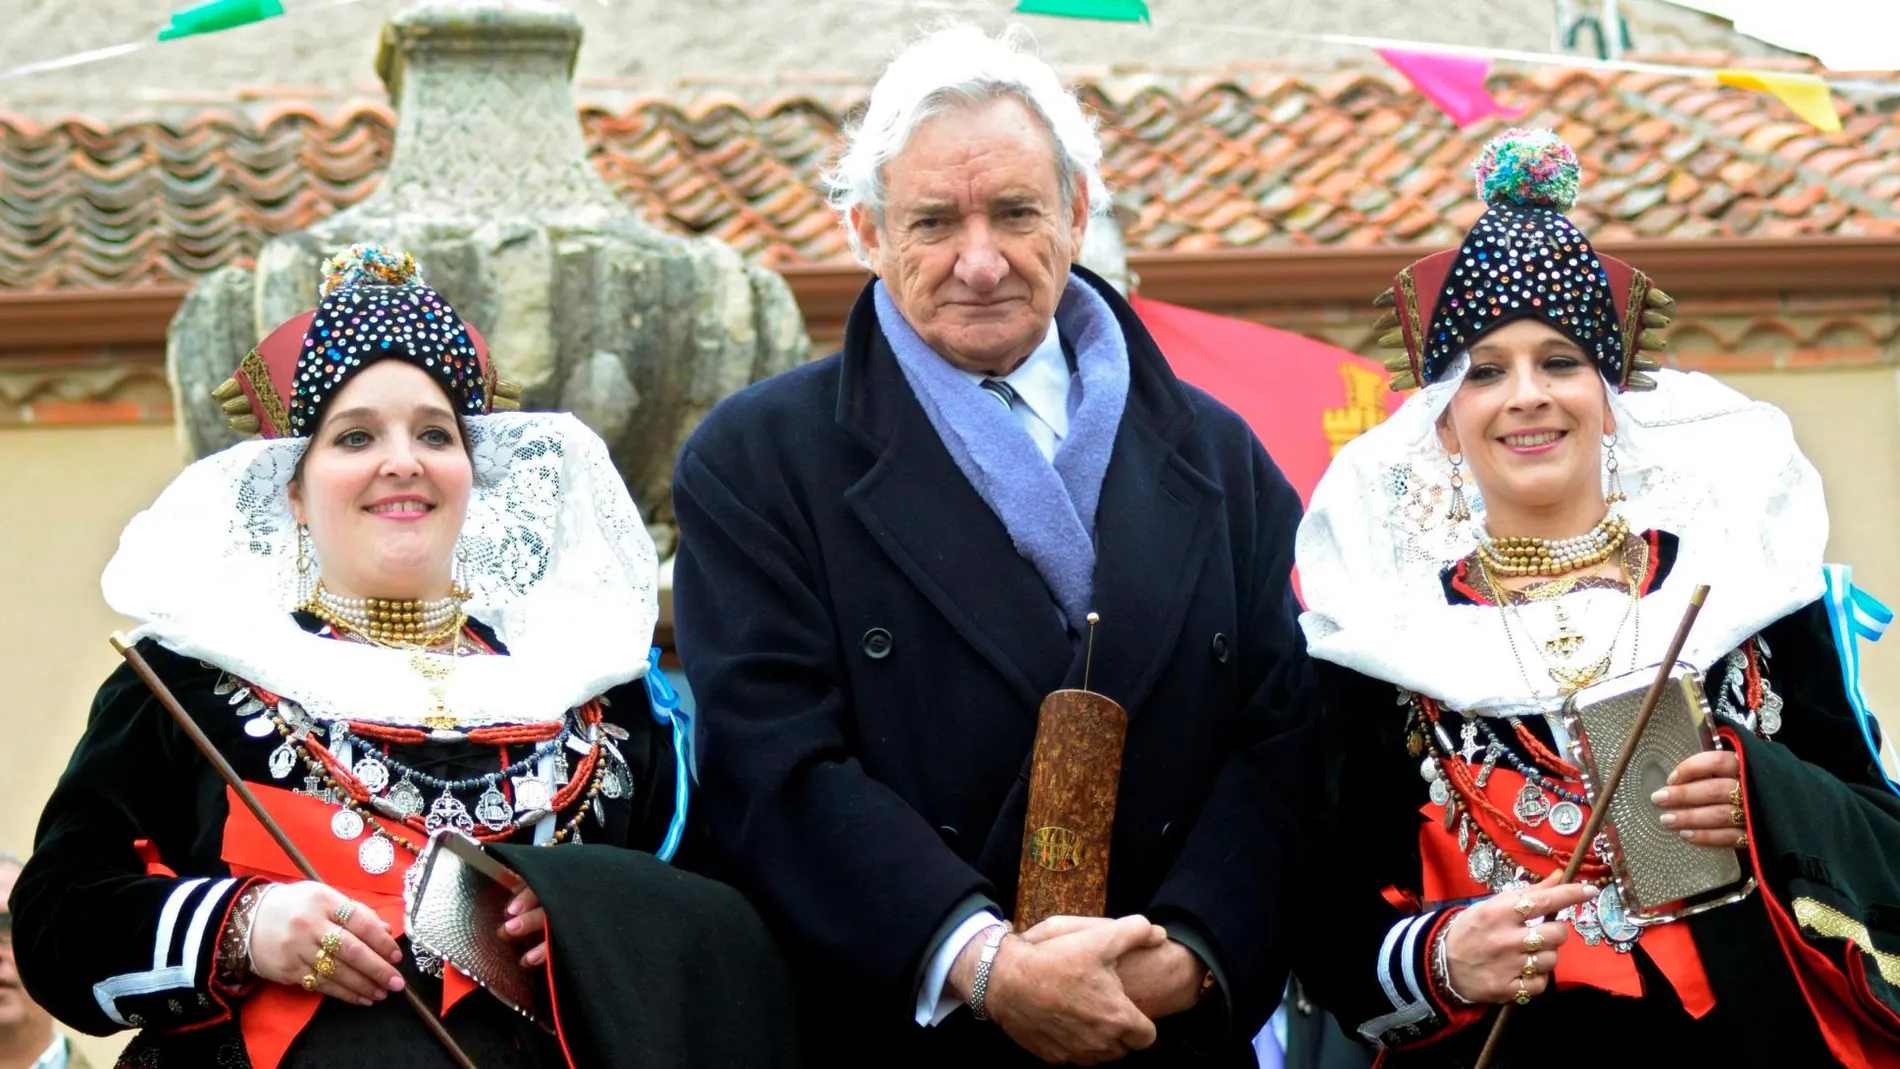 Las alcaldesas de Zamarramala, en Segovia, las hermanas Elisabet y Débora Velasco Otero, posan con el periodista Luis del Olmo, que ha recibido el premio Matahombres de oro, durante la celebración de la fiesta de Santa Águeda